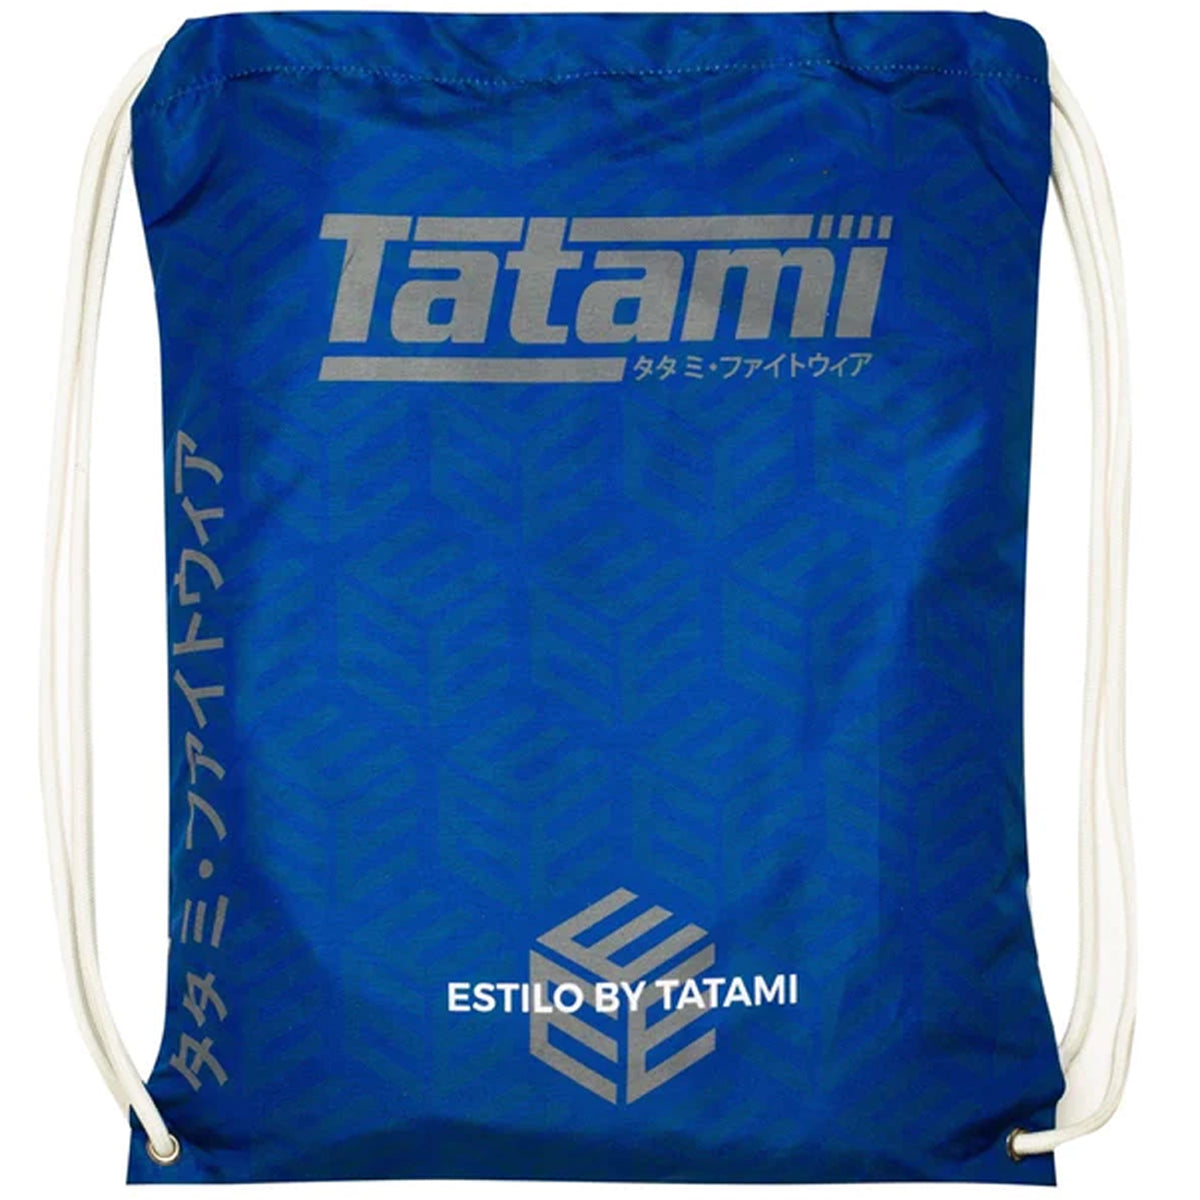 Tatami Fightwear Estilo Black Label BJJ Gi - Gray/Blue Tatami Fightwear